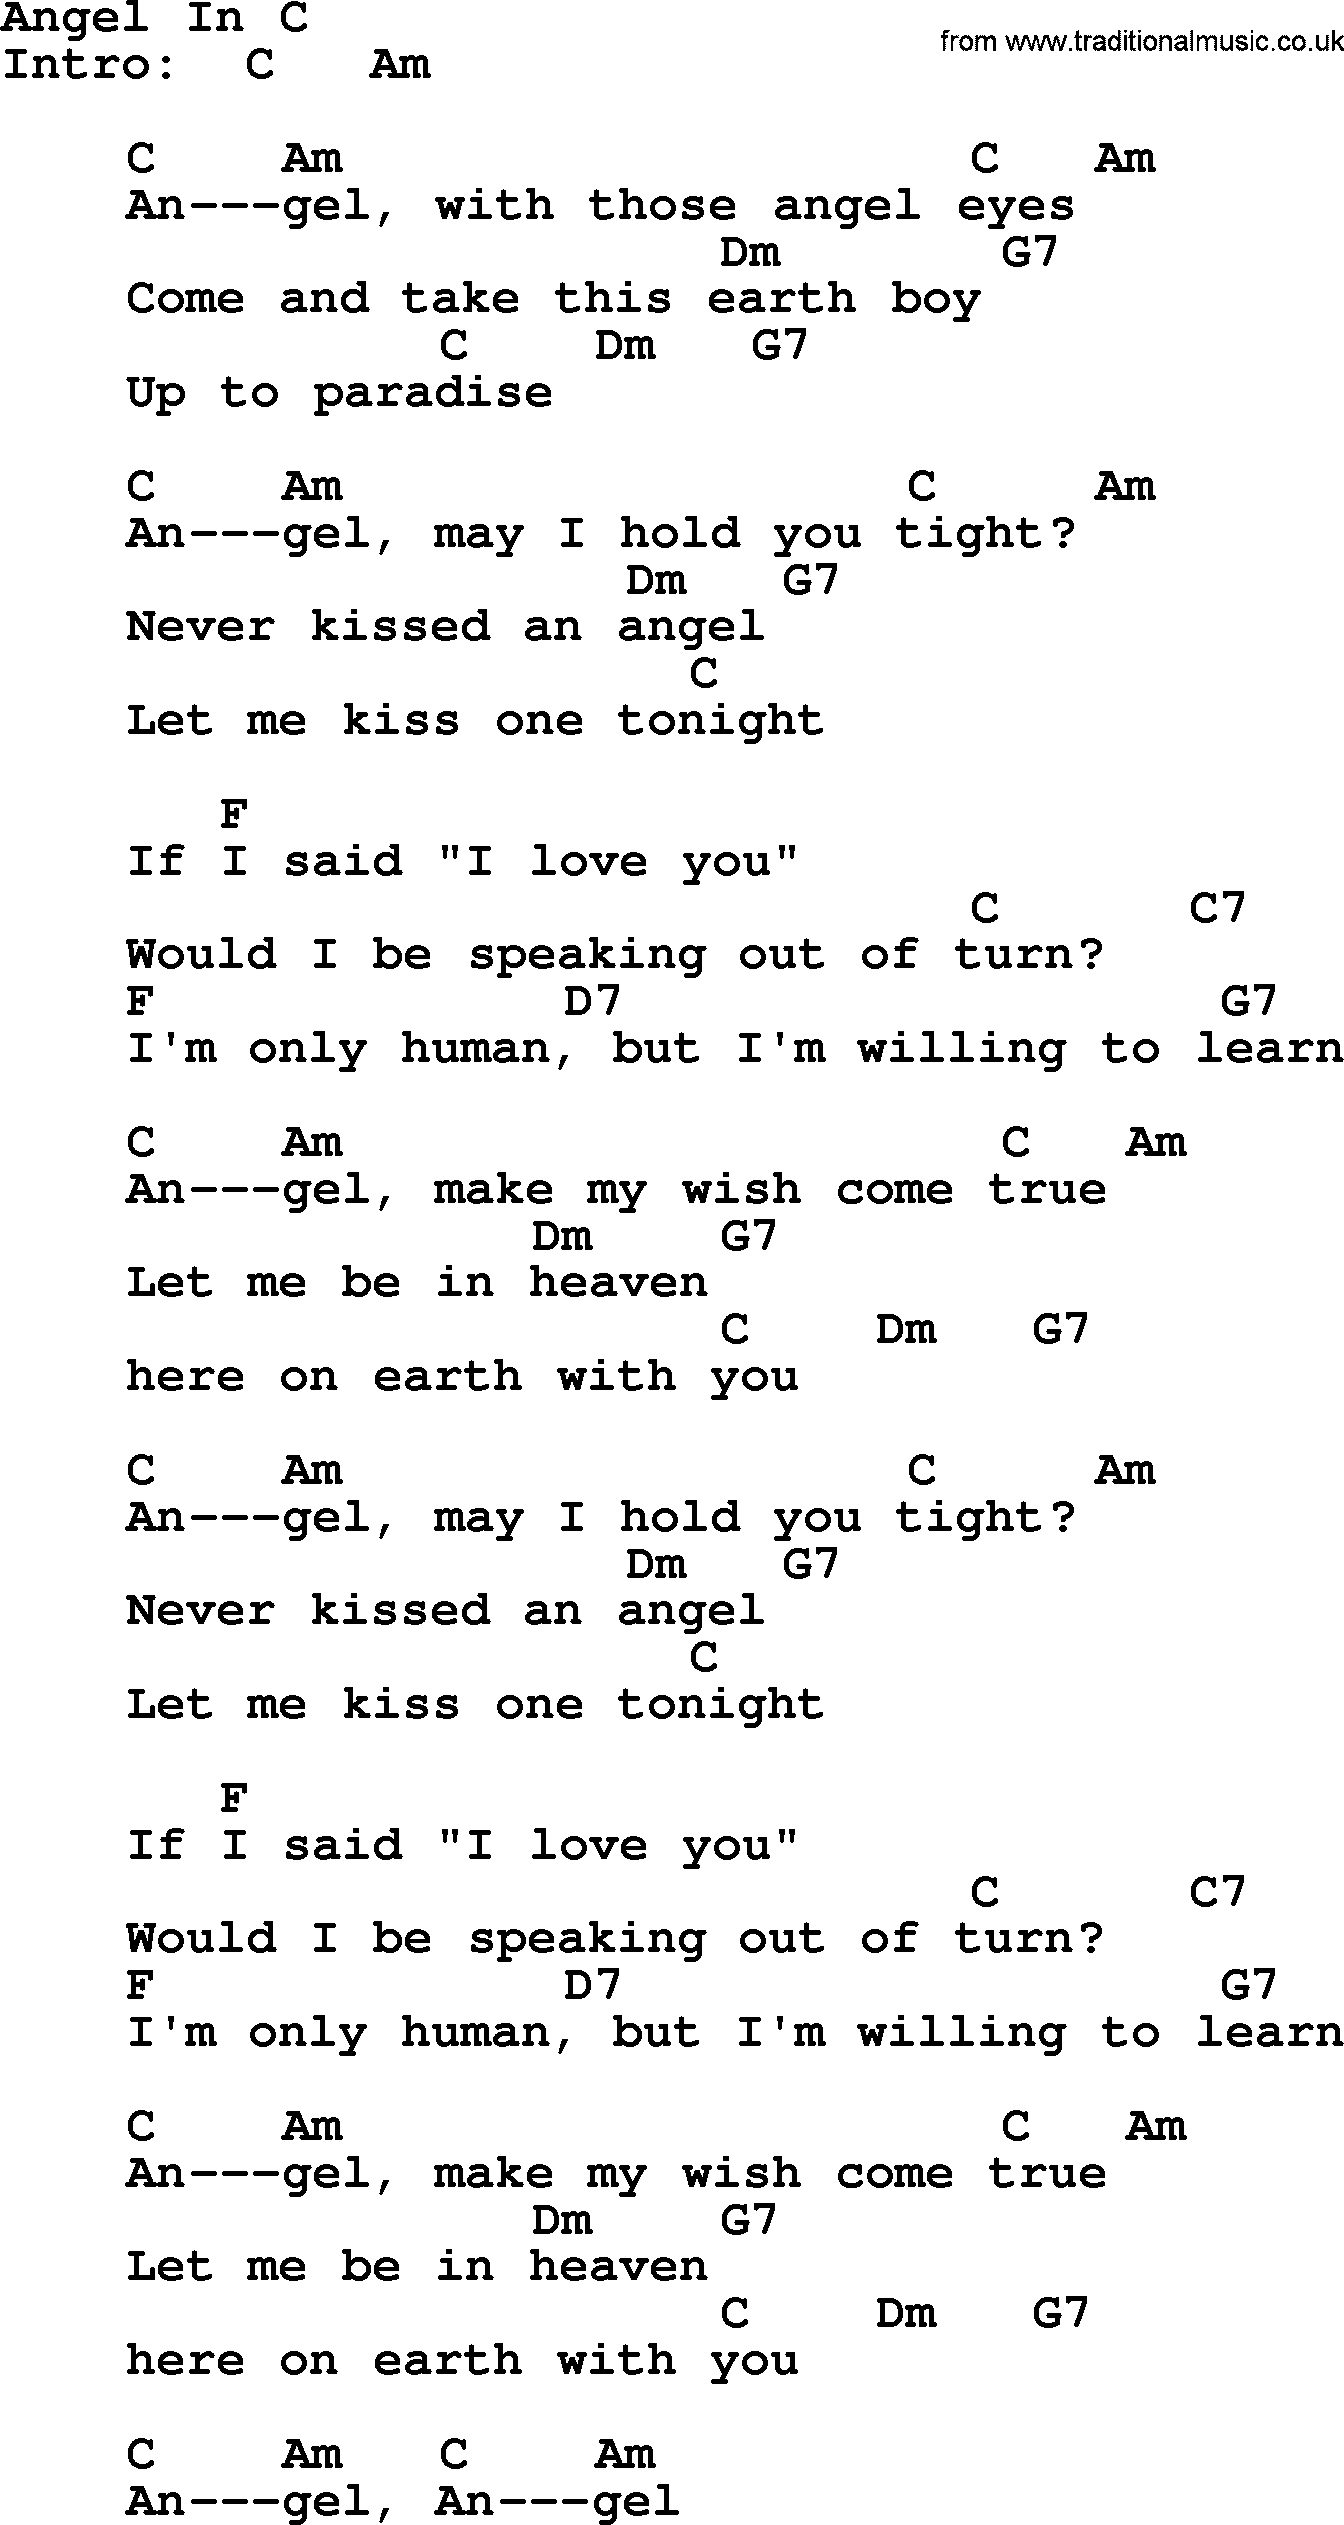 Elvis Presley song: Angel In C, lyrics and chords